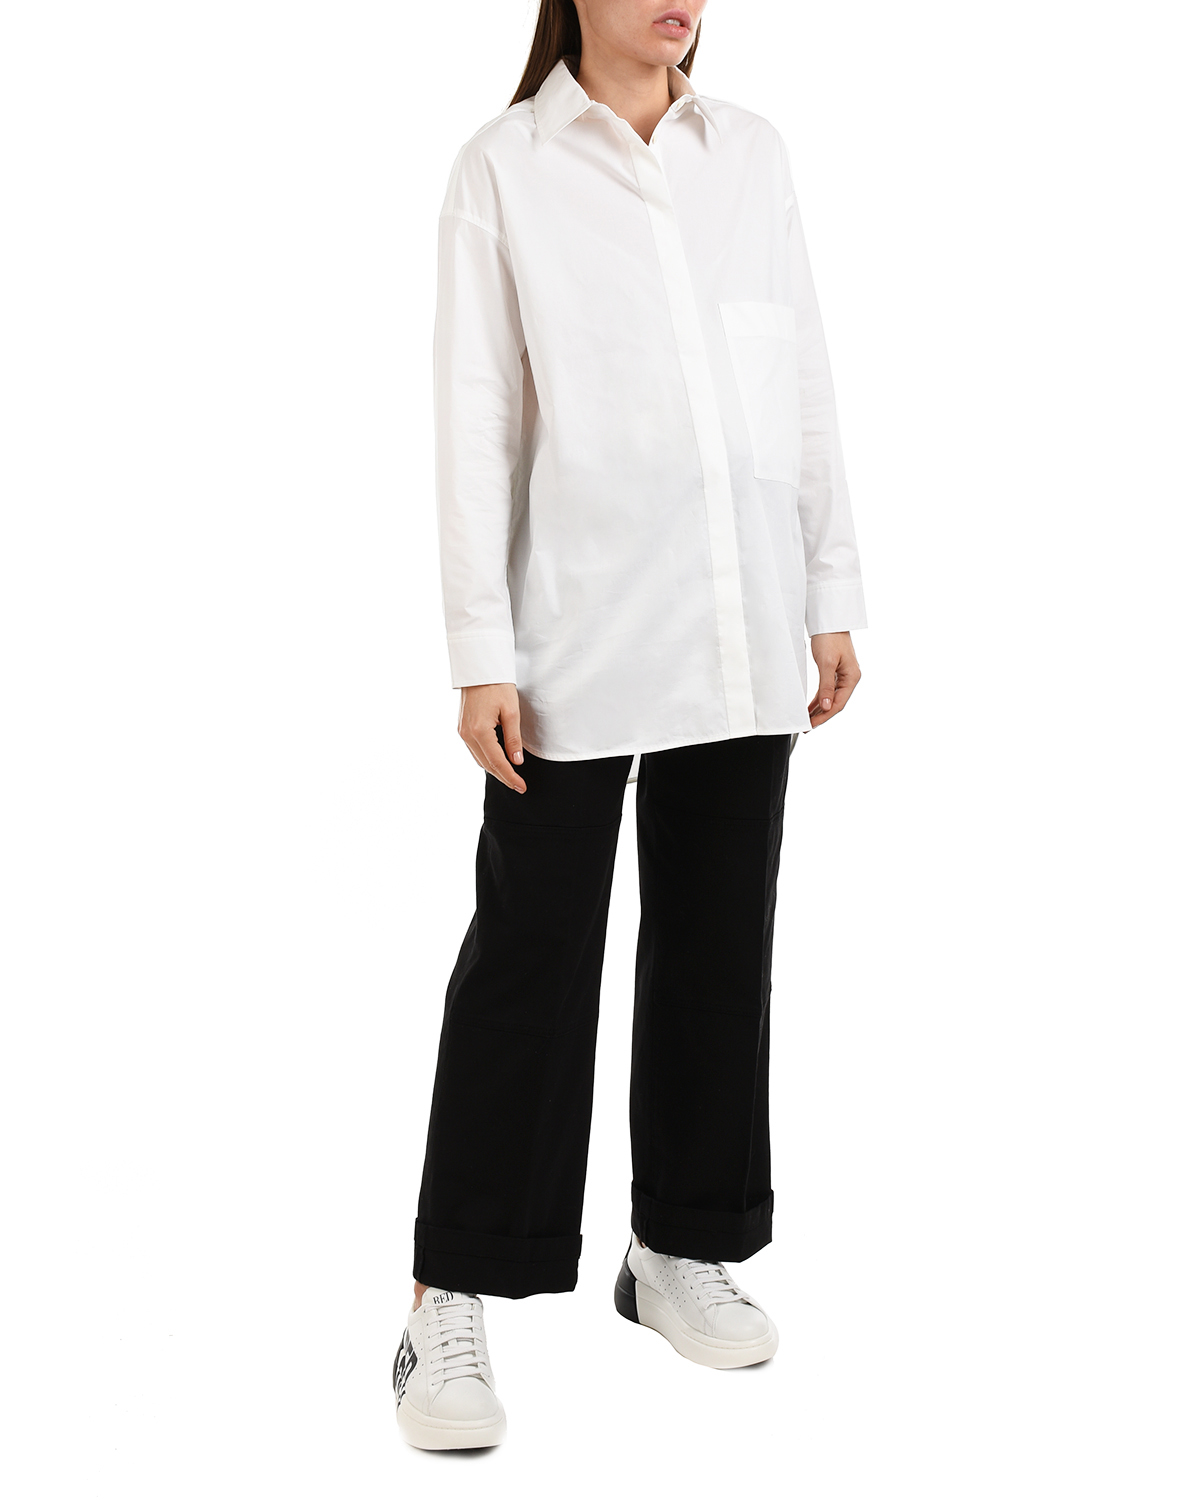 Удлиненная белая рубашка Parosh, размер 38, цвет белый - фото 4